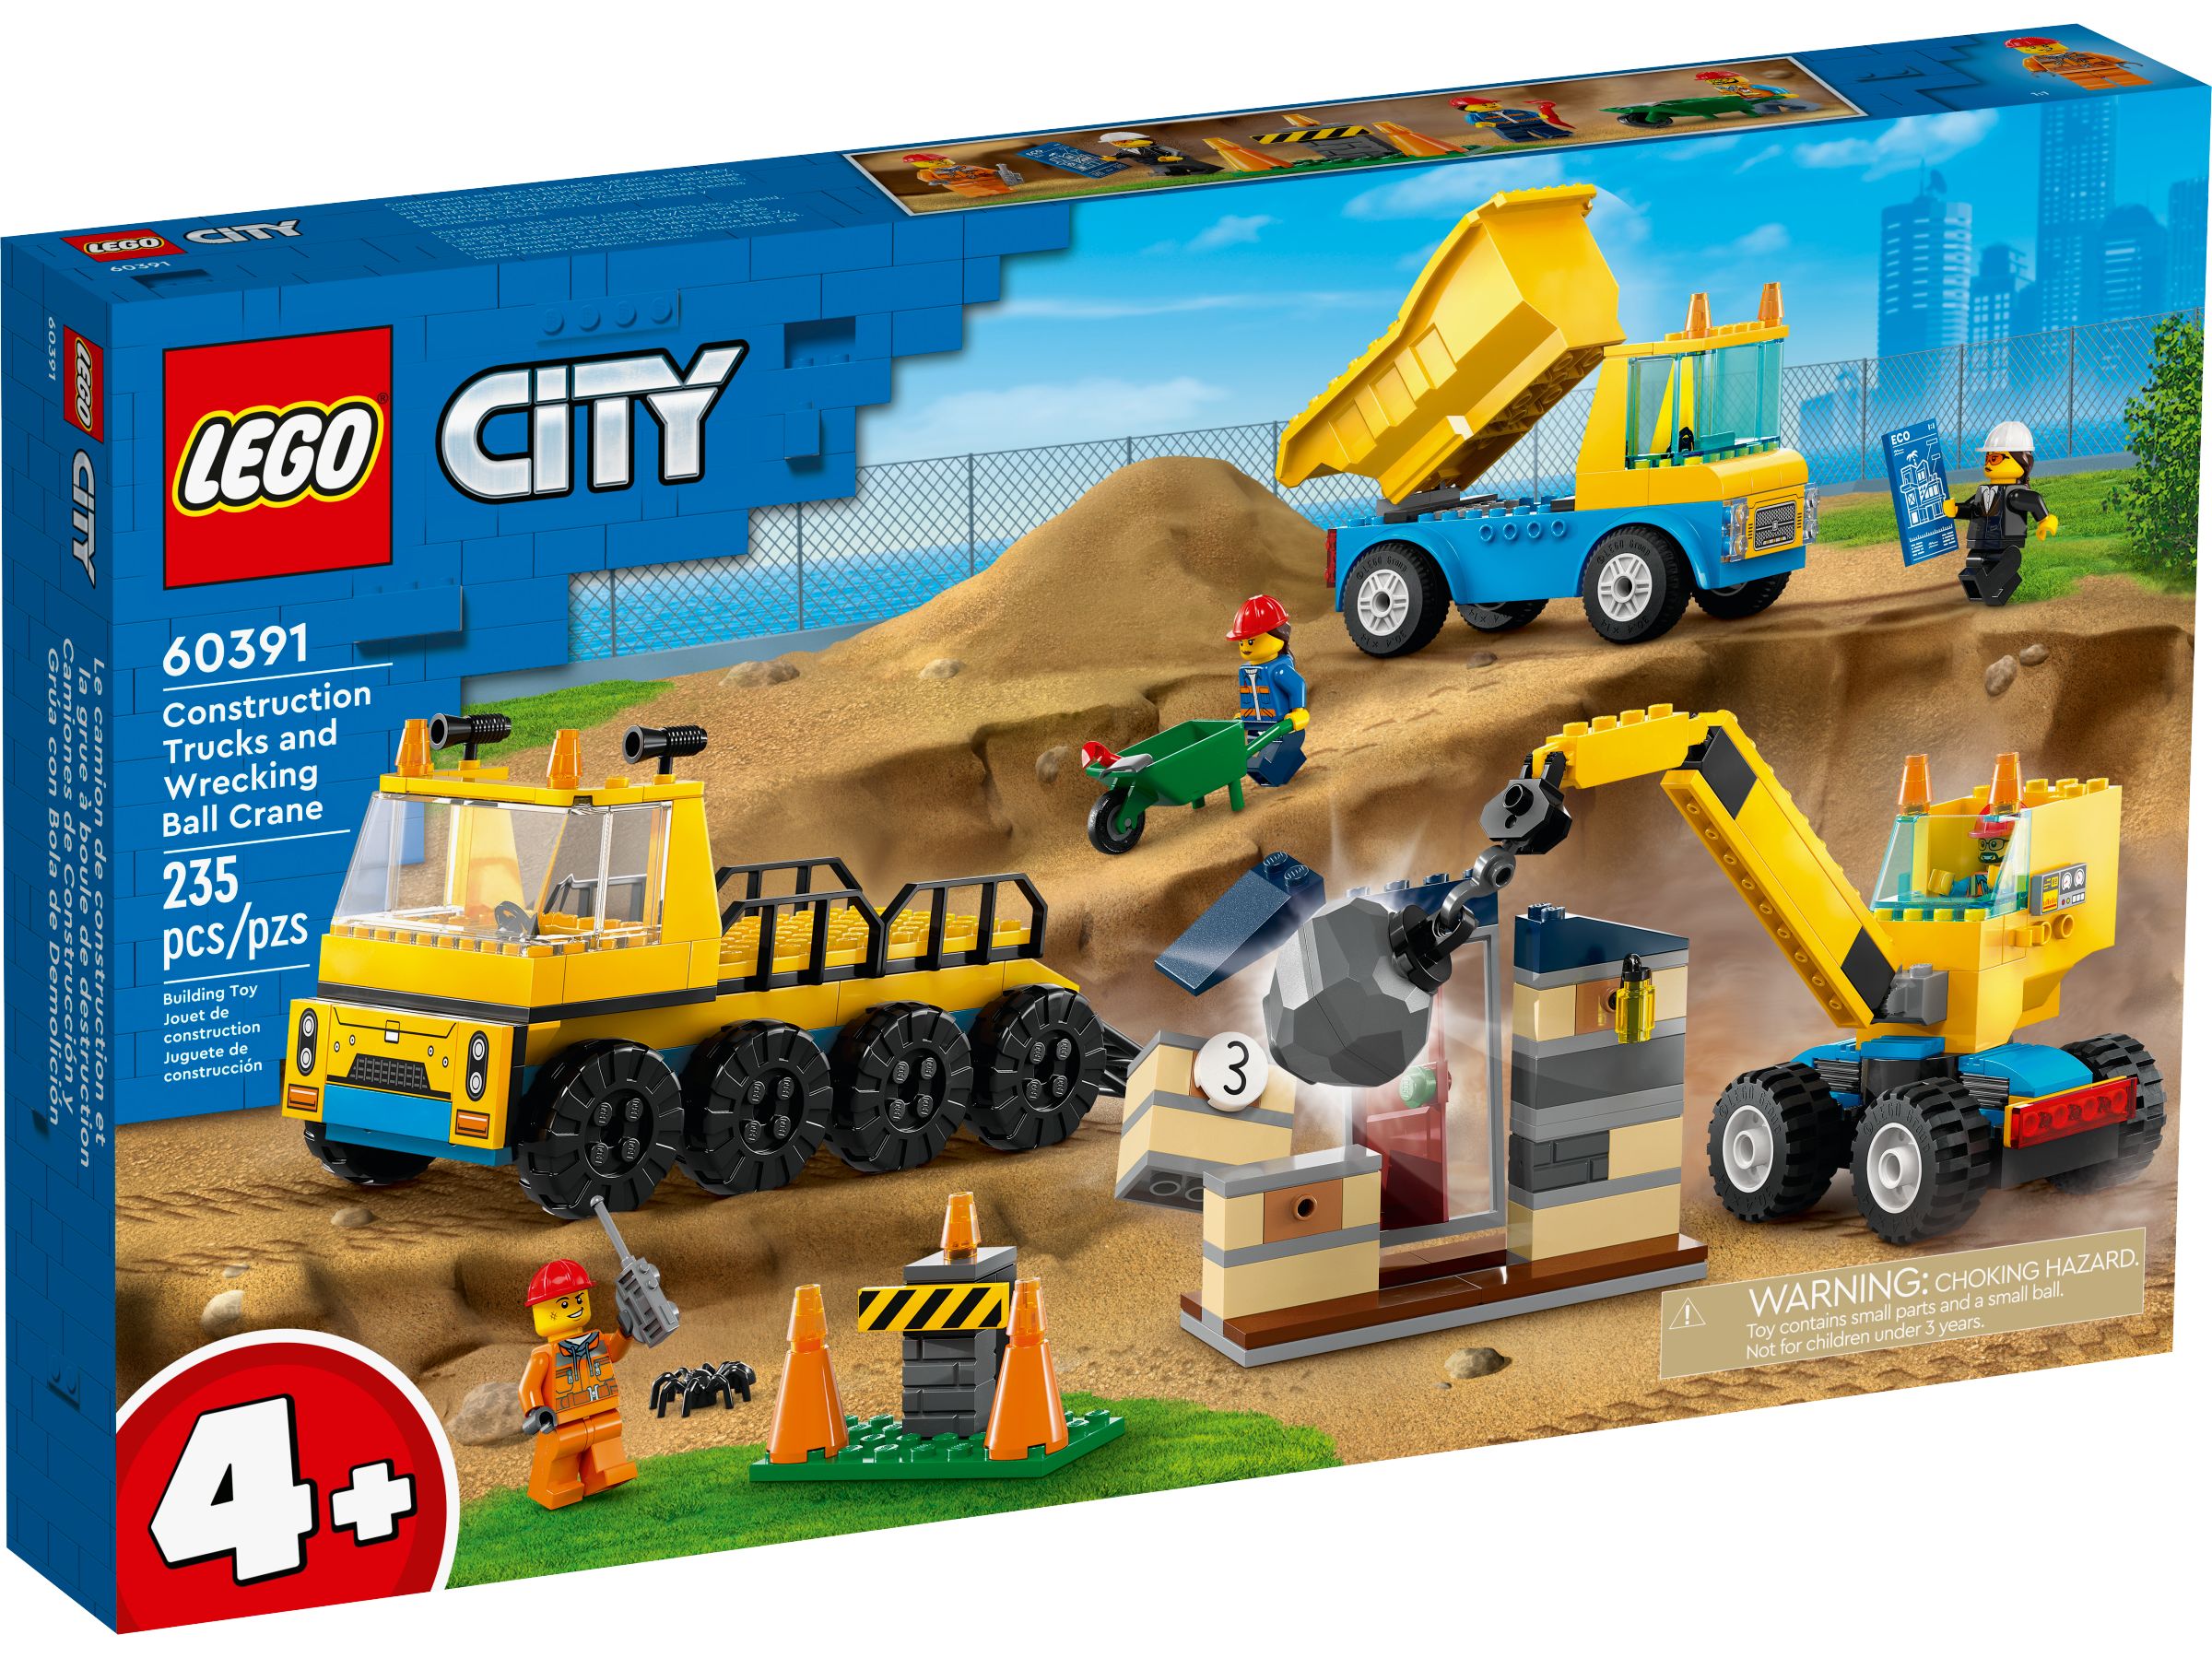 LEGO City 60391 Baufahrzeuge und Kran mit Abrissbirne LEGO_60391_alt1.jpg